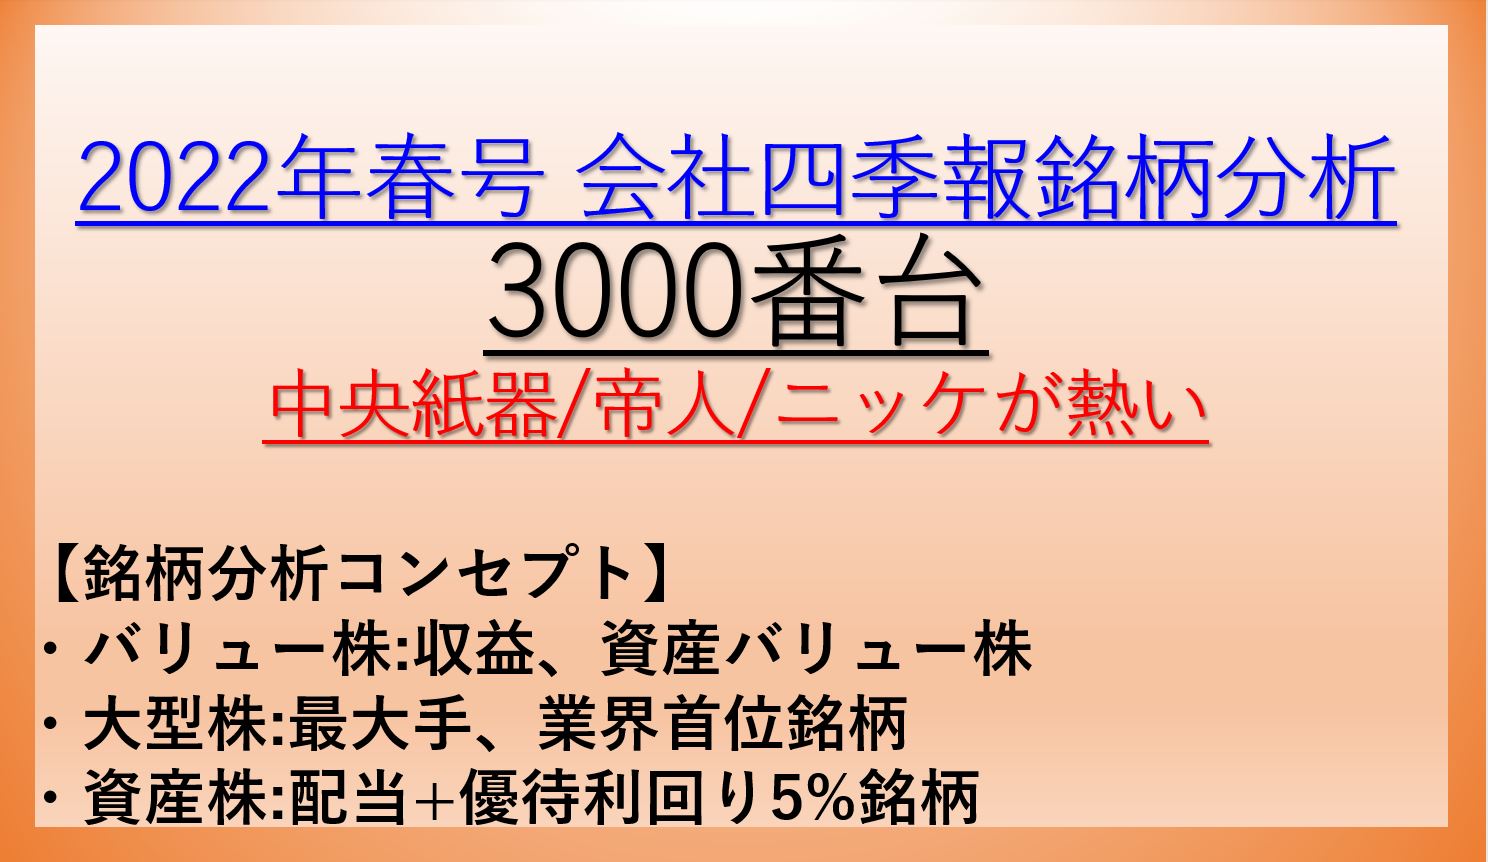 2022年春号-会社四季報銘柄分析-3000番台